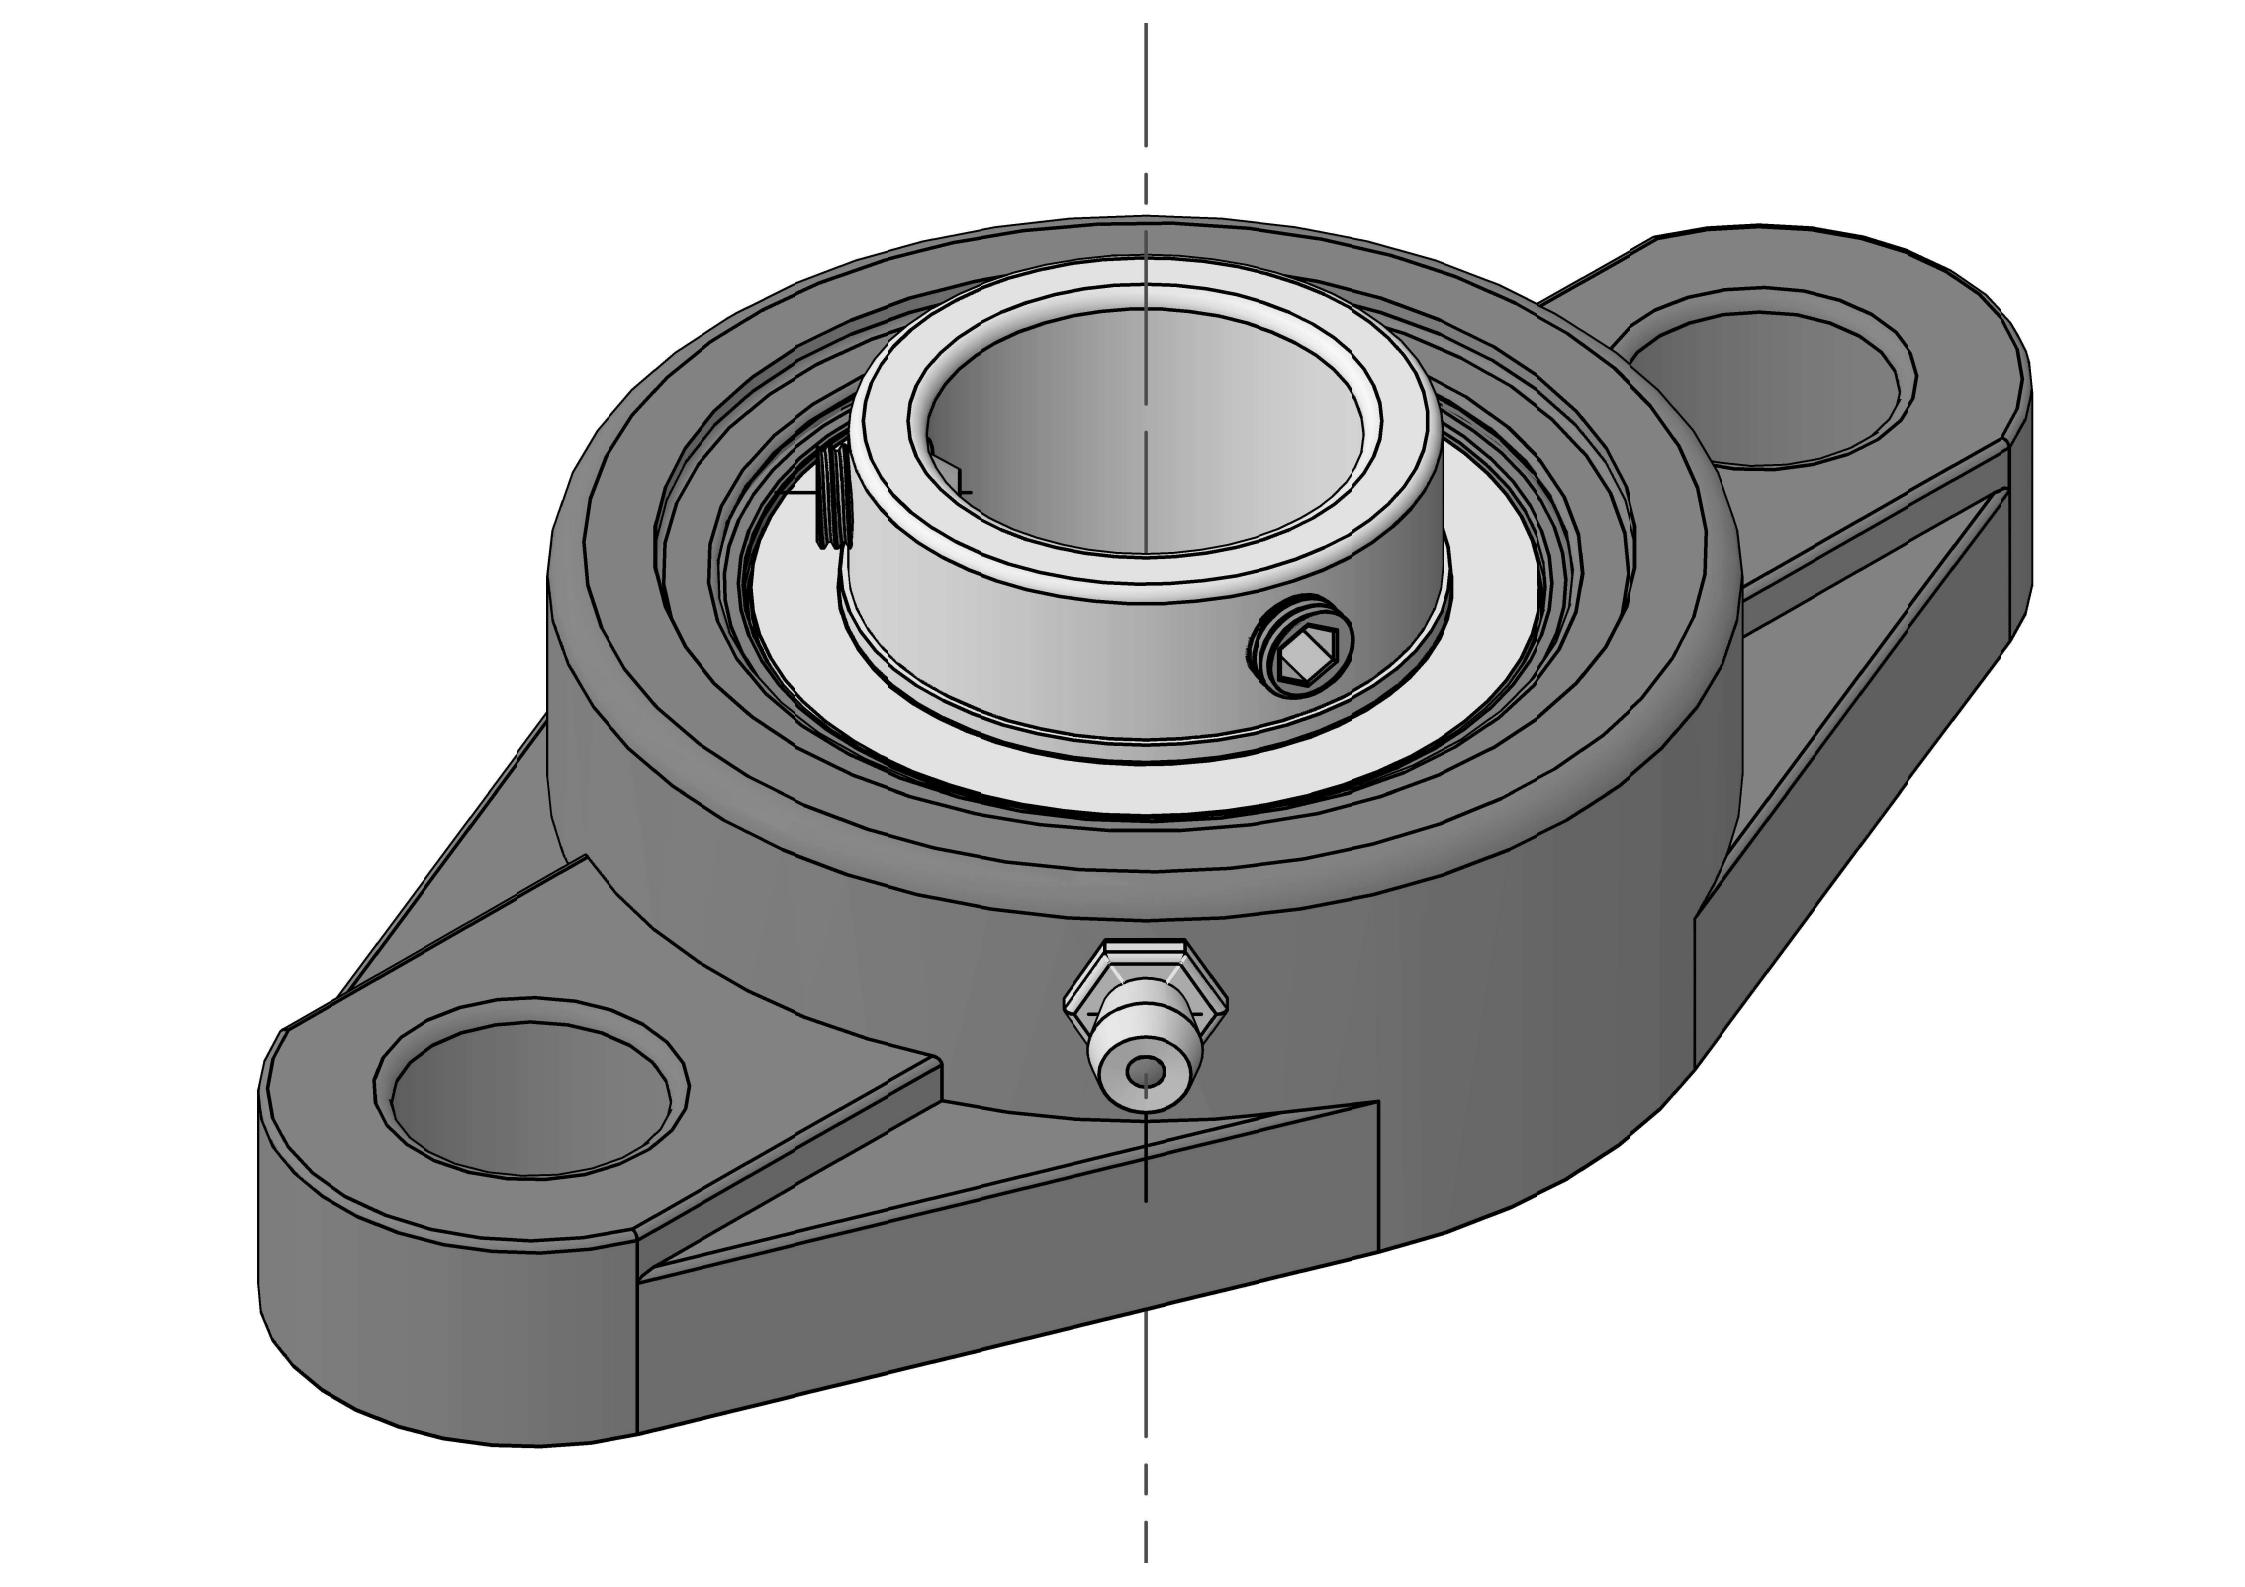 UCFL308 Zweibolzen-Ovalflanschlagereinheiten mit 40 mm Bohrung